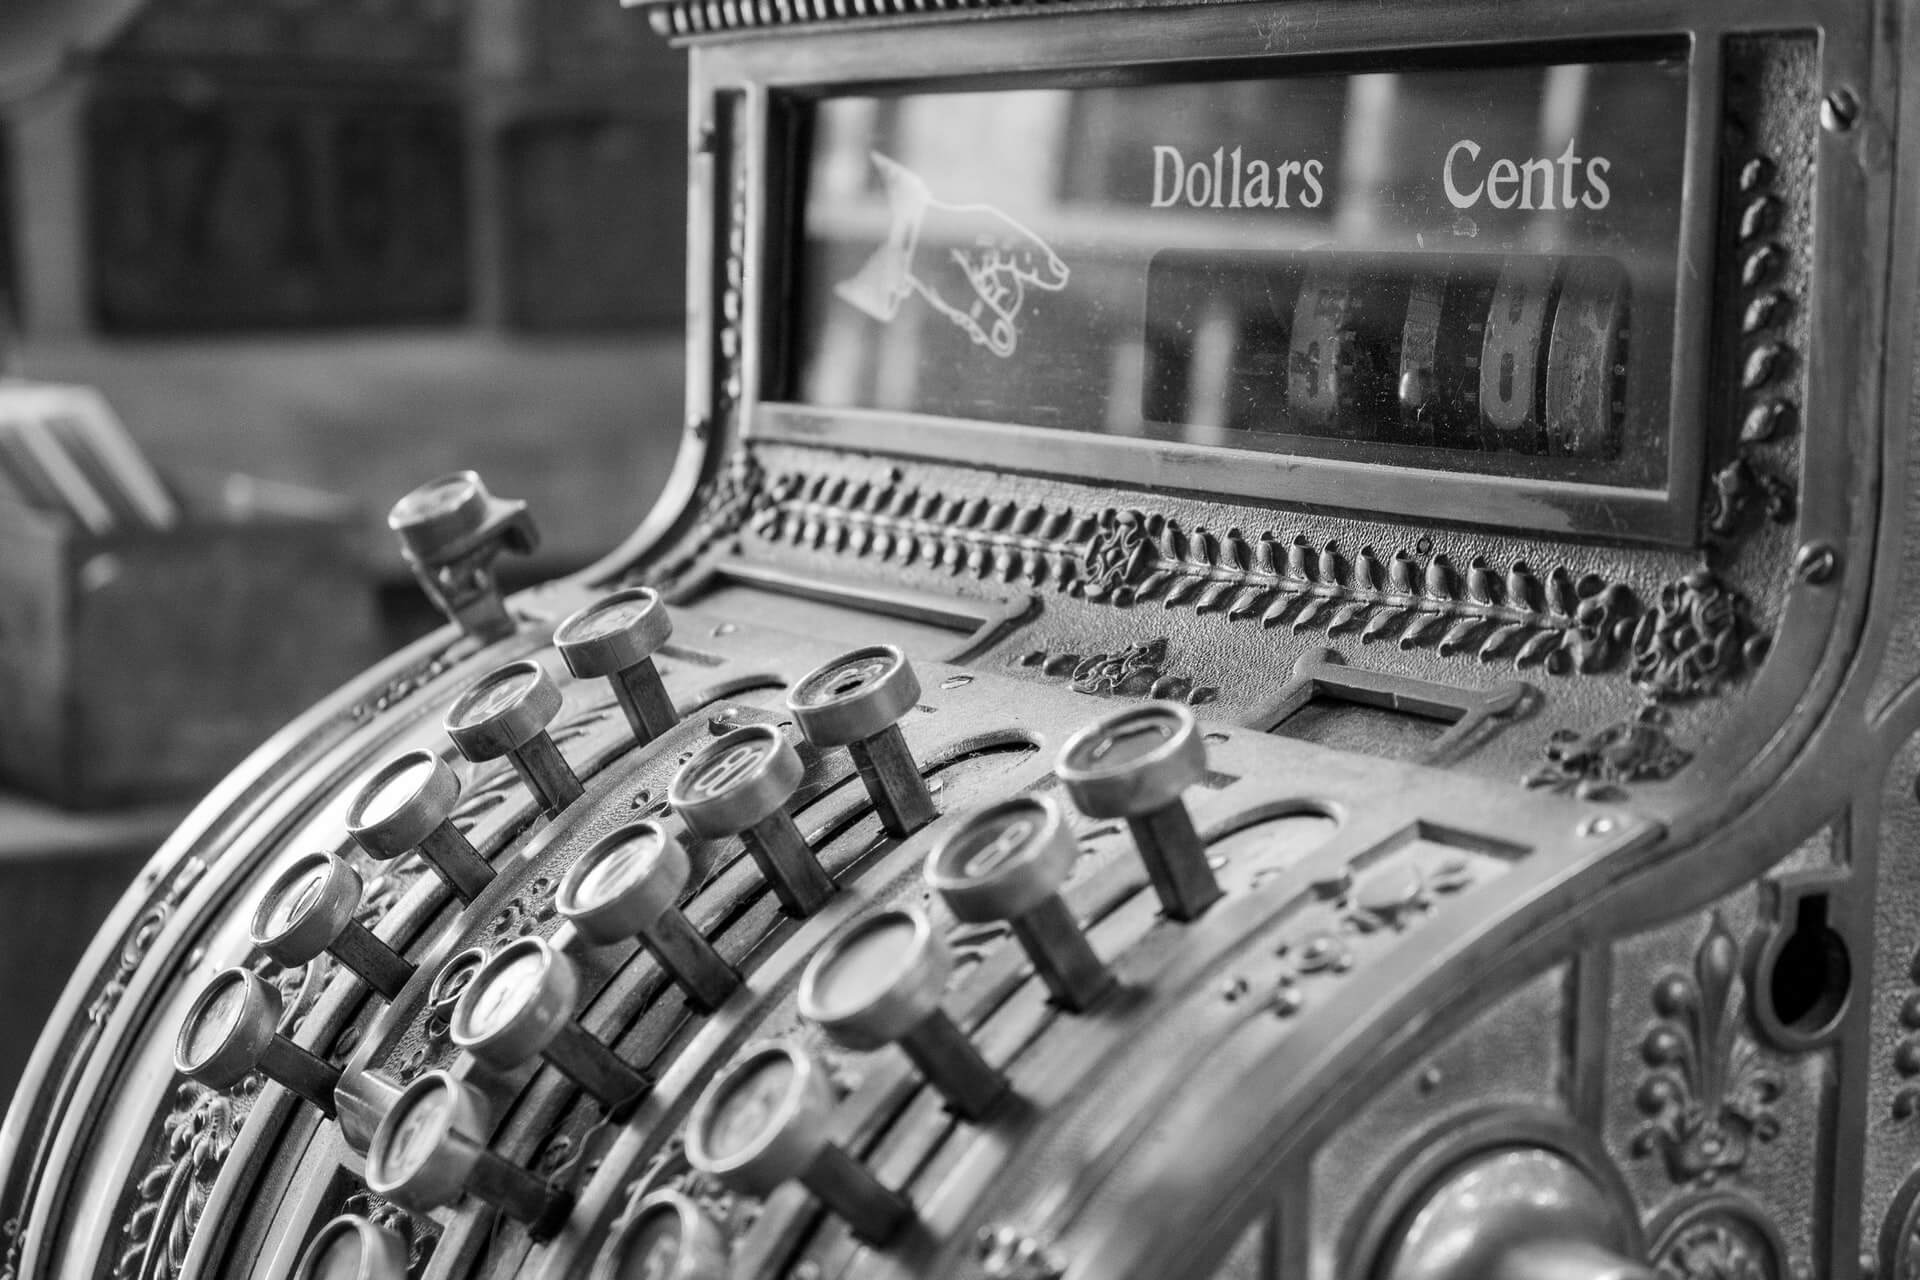 Vintage cash register in black and white